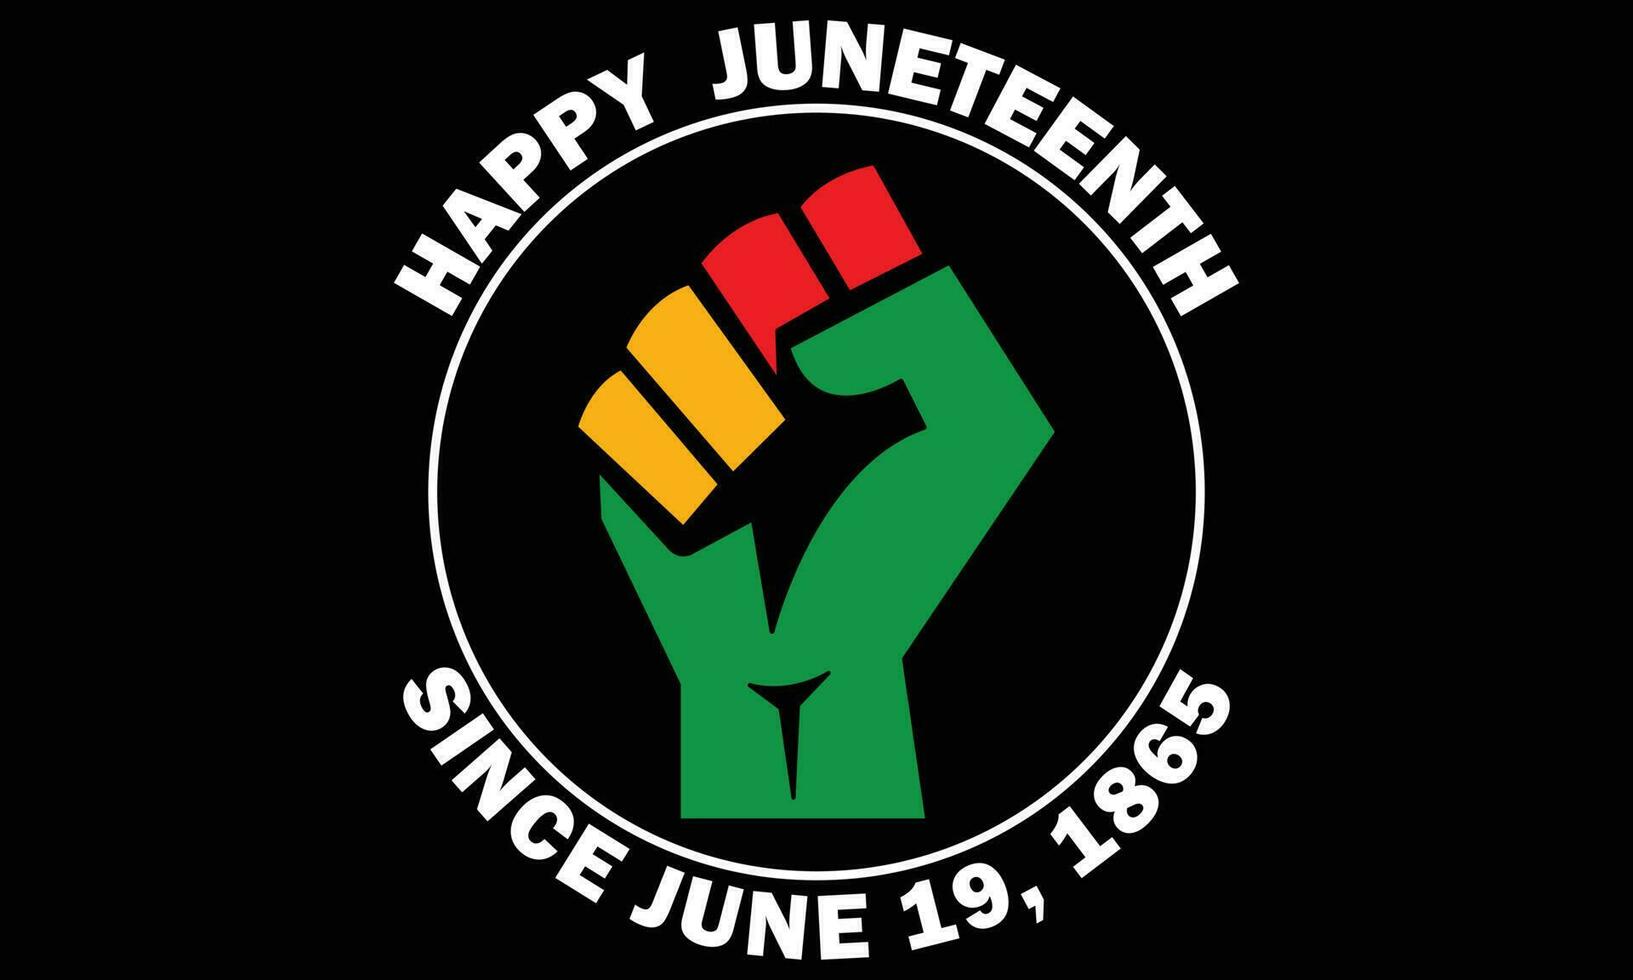 contento juneteenth da giugno 19, 1865 maglietta design vettore - juneteenth africano americano indipendenza giorno, giugno 19. juneteenth celebrare nero la libertà bene per maglietta, striscione, saluto carta design